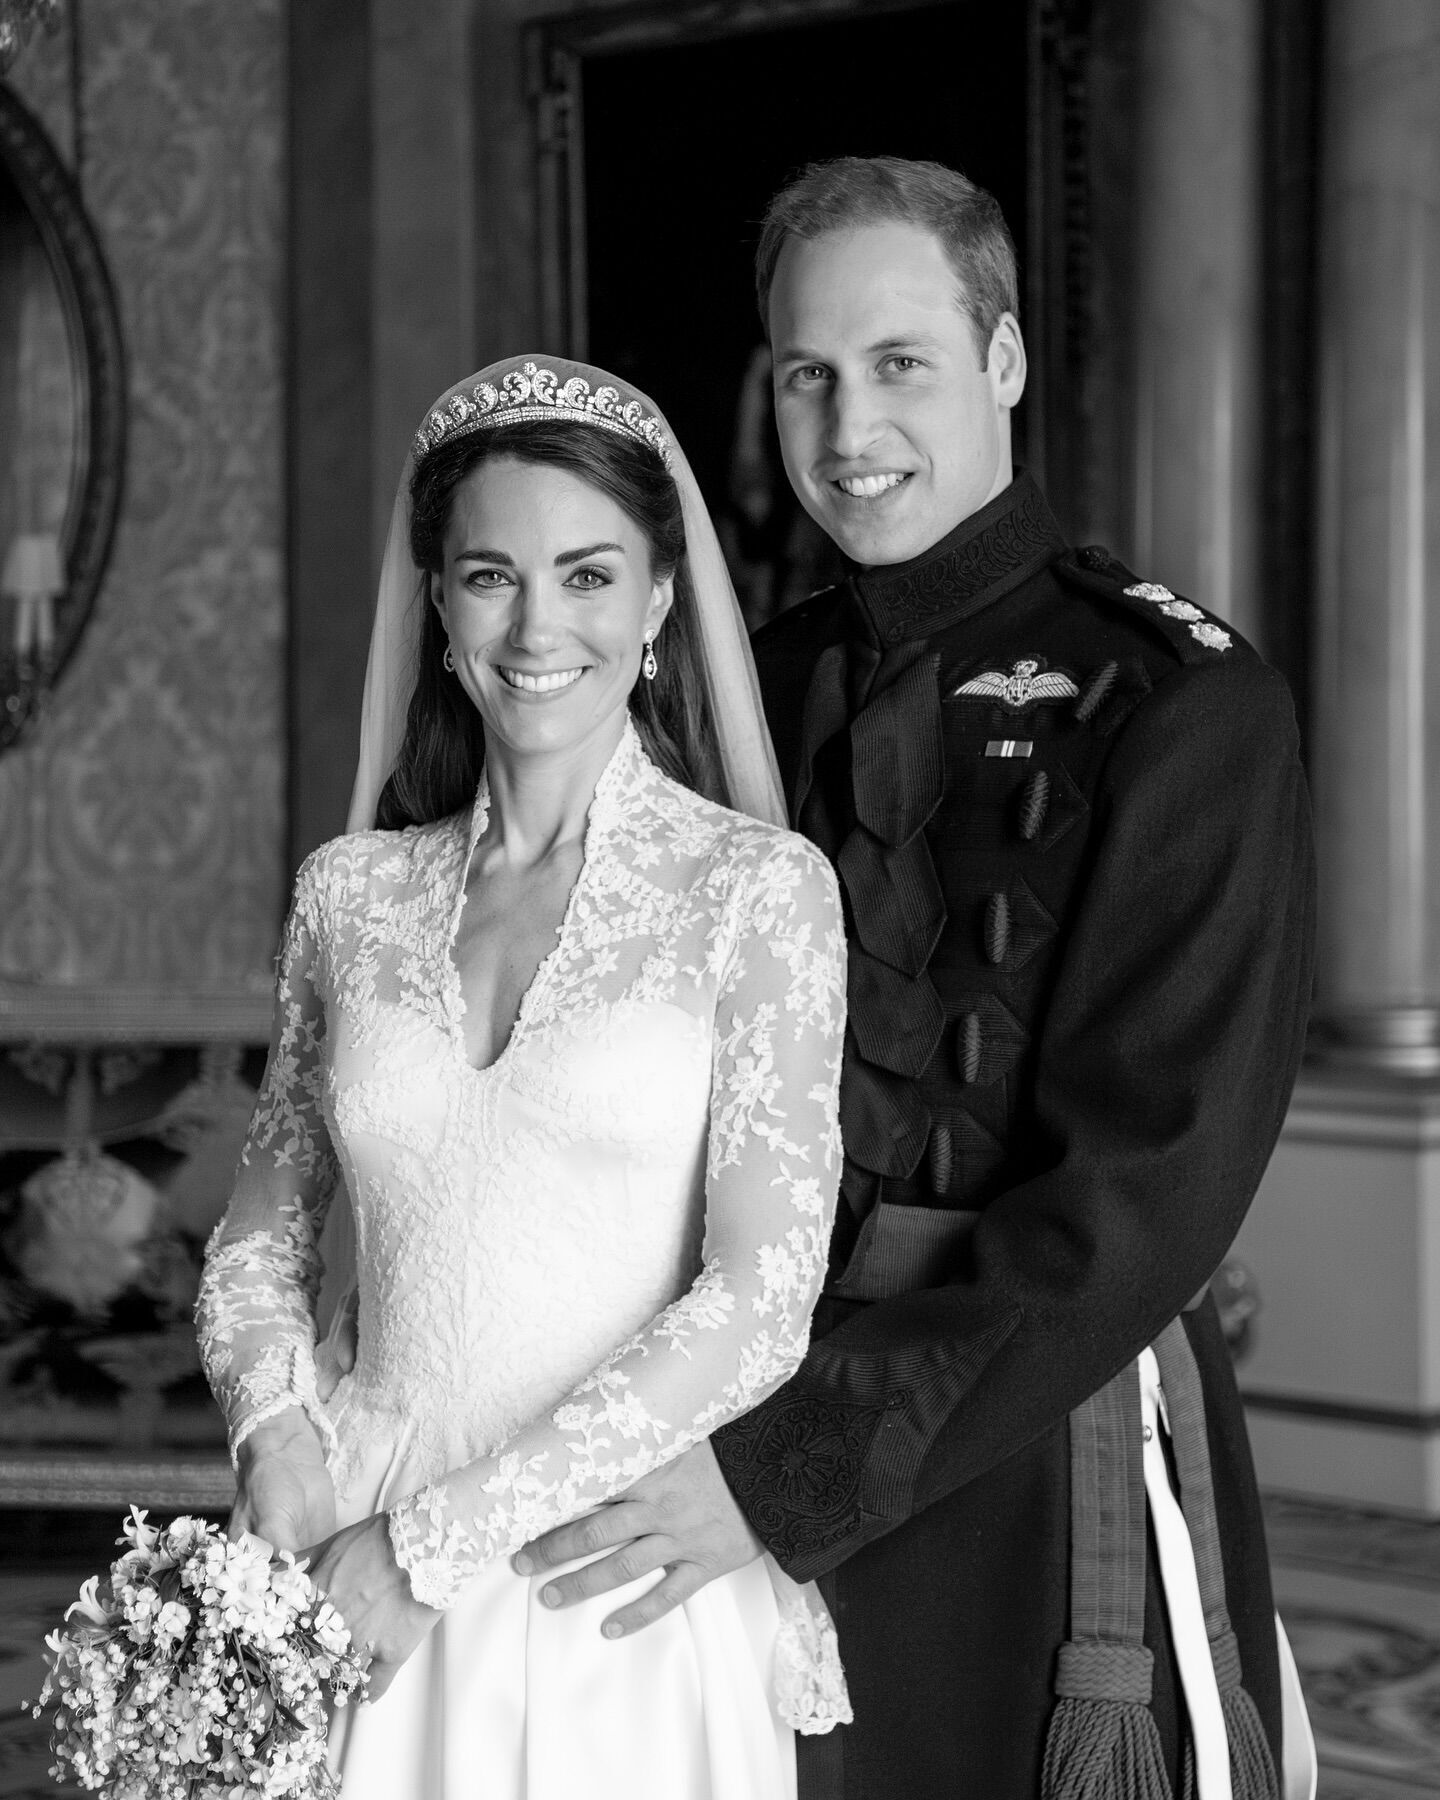 Черно-белое фото Кейт Миддлтон и принца Уильяма встревожило фанатов королевской семьи